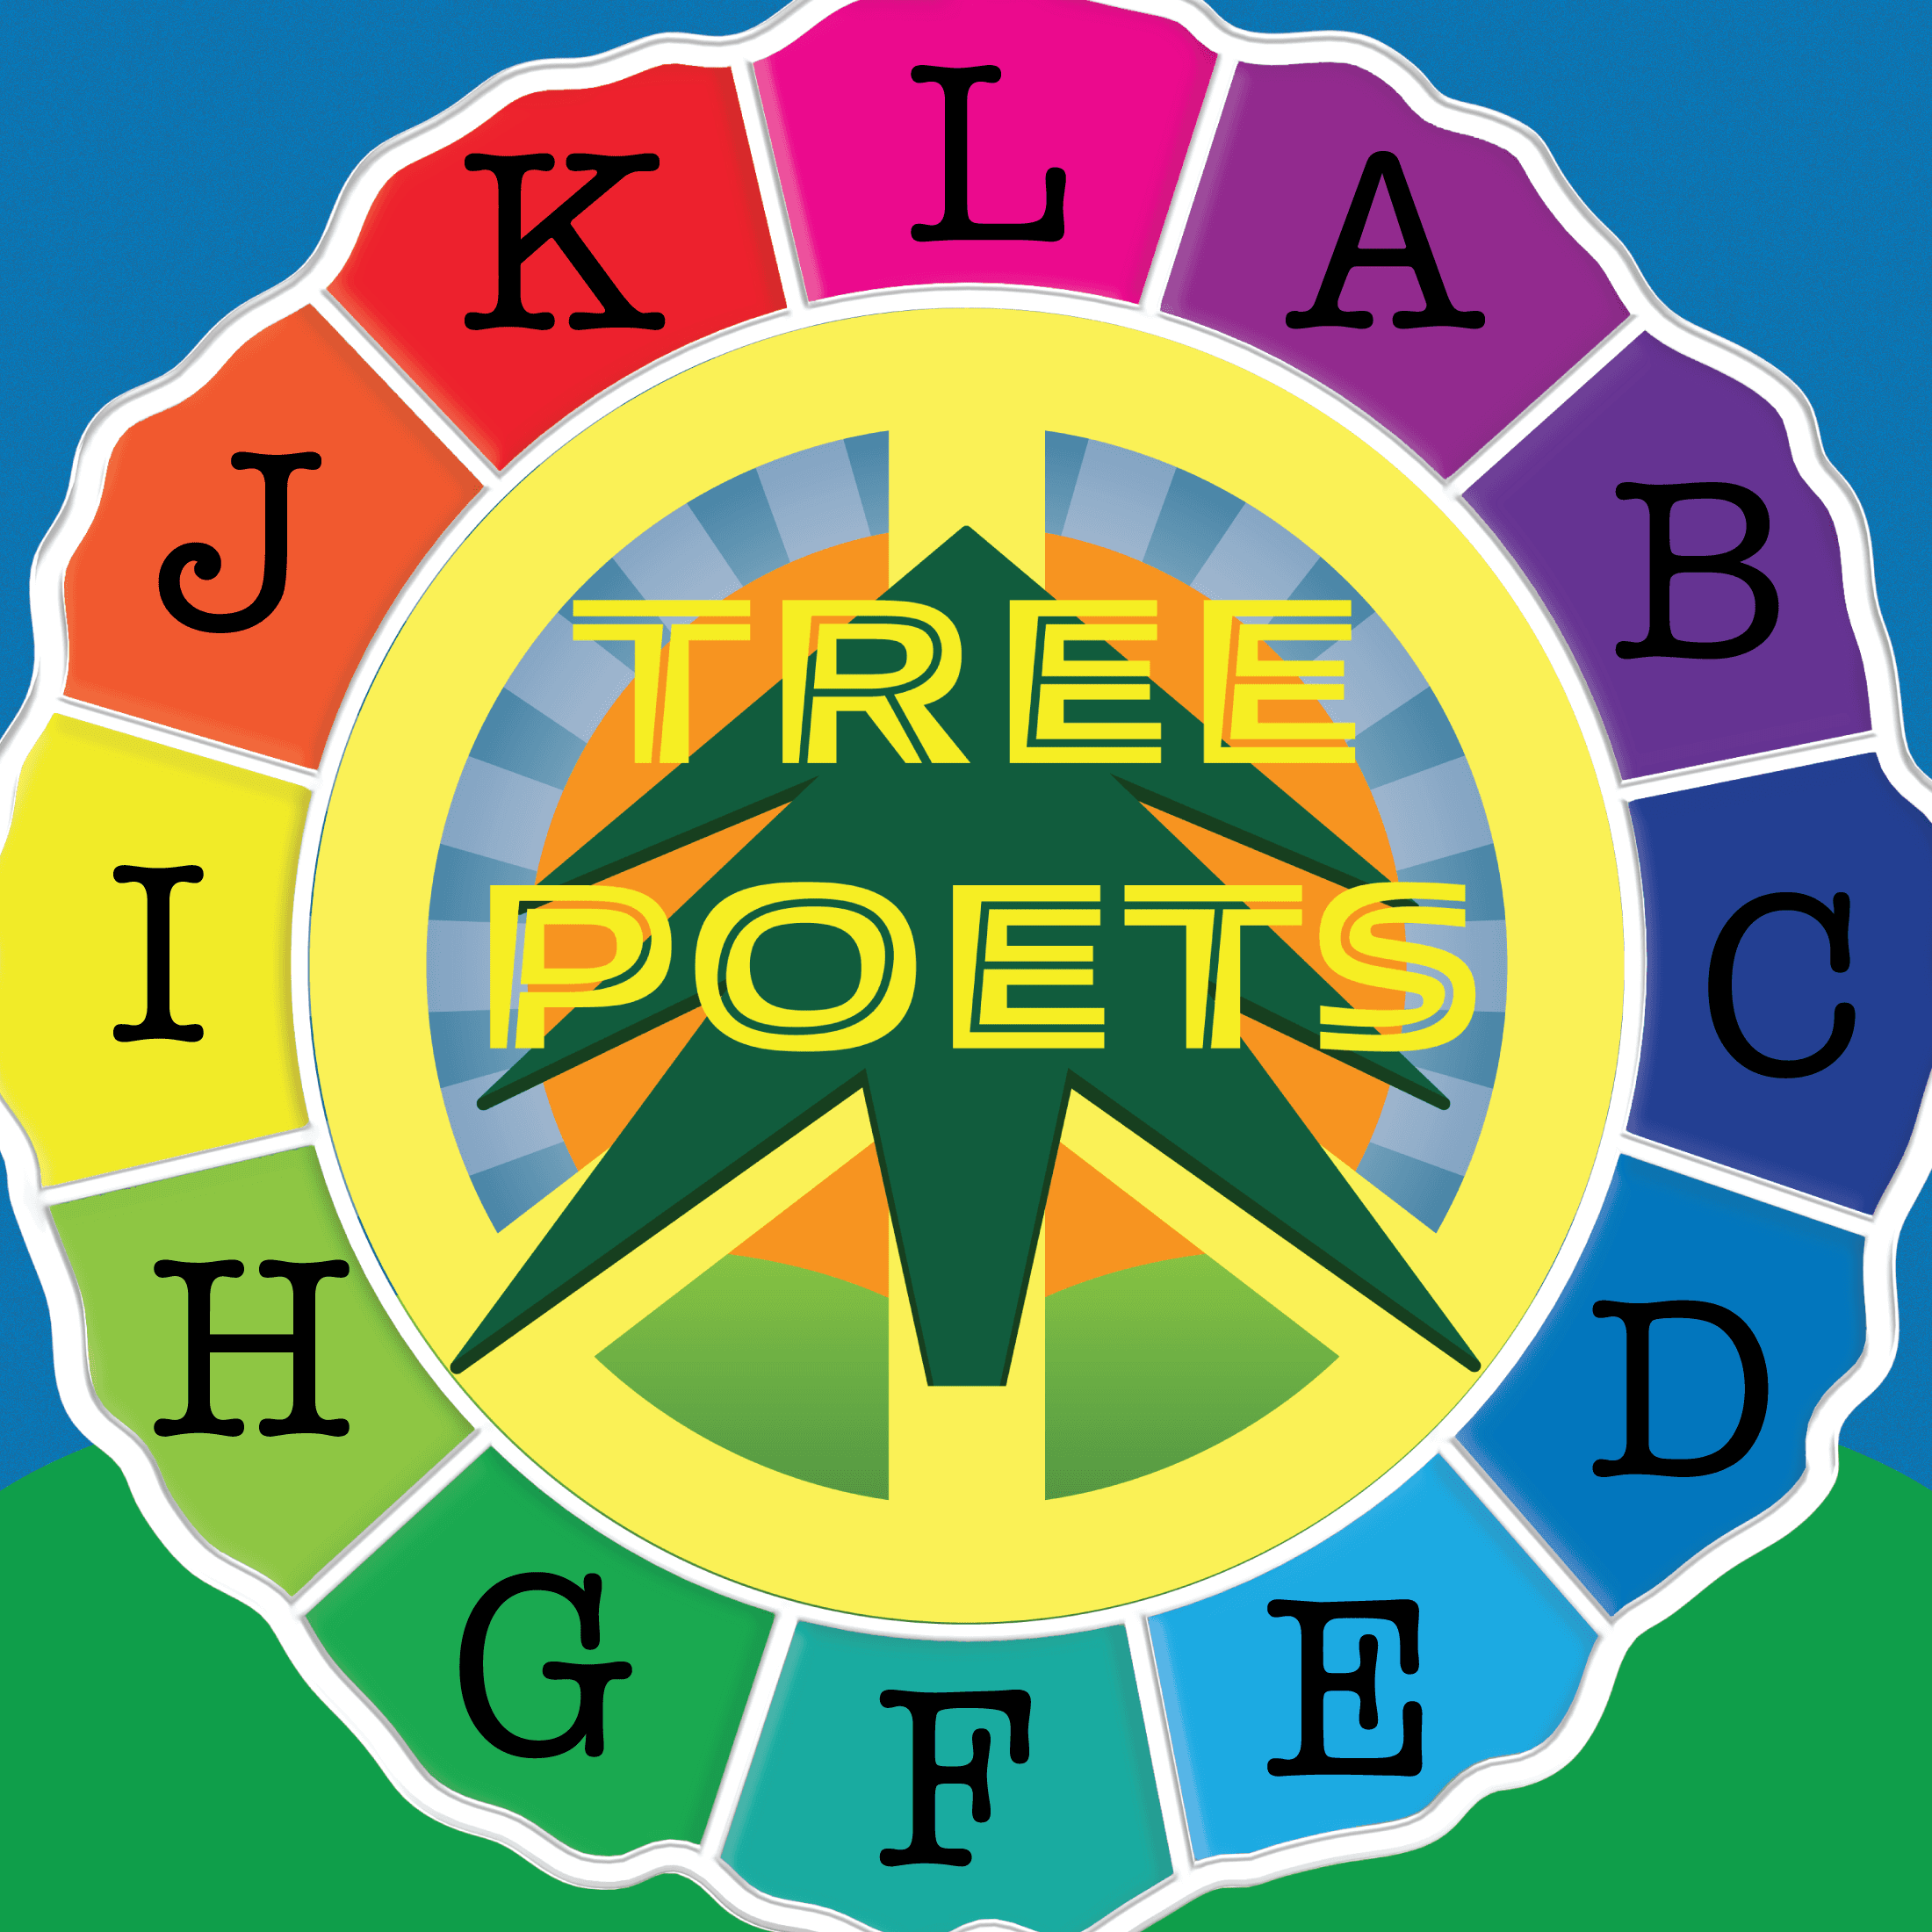 Tree Poets